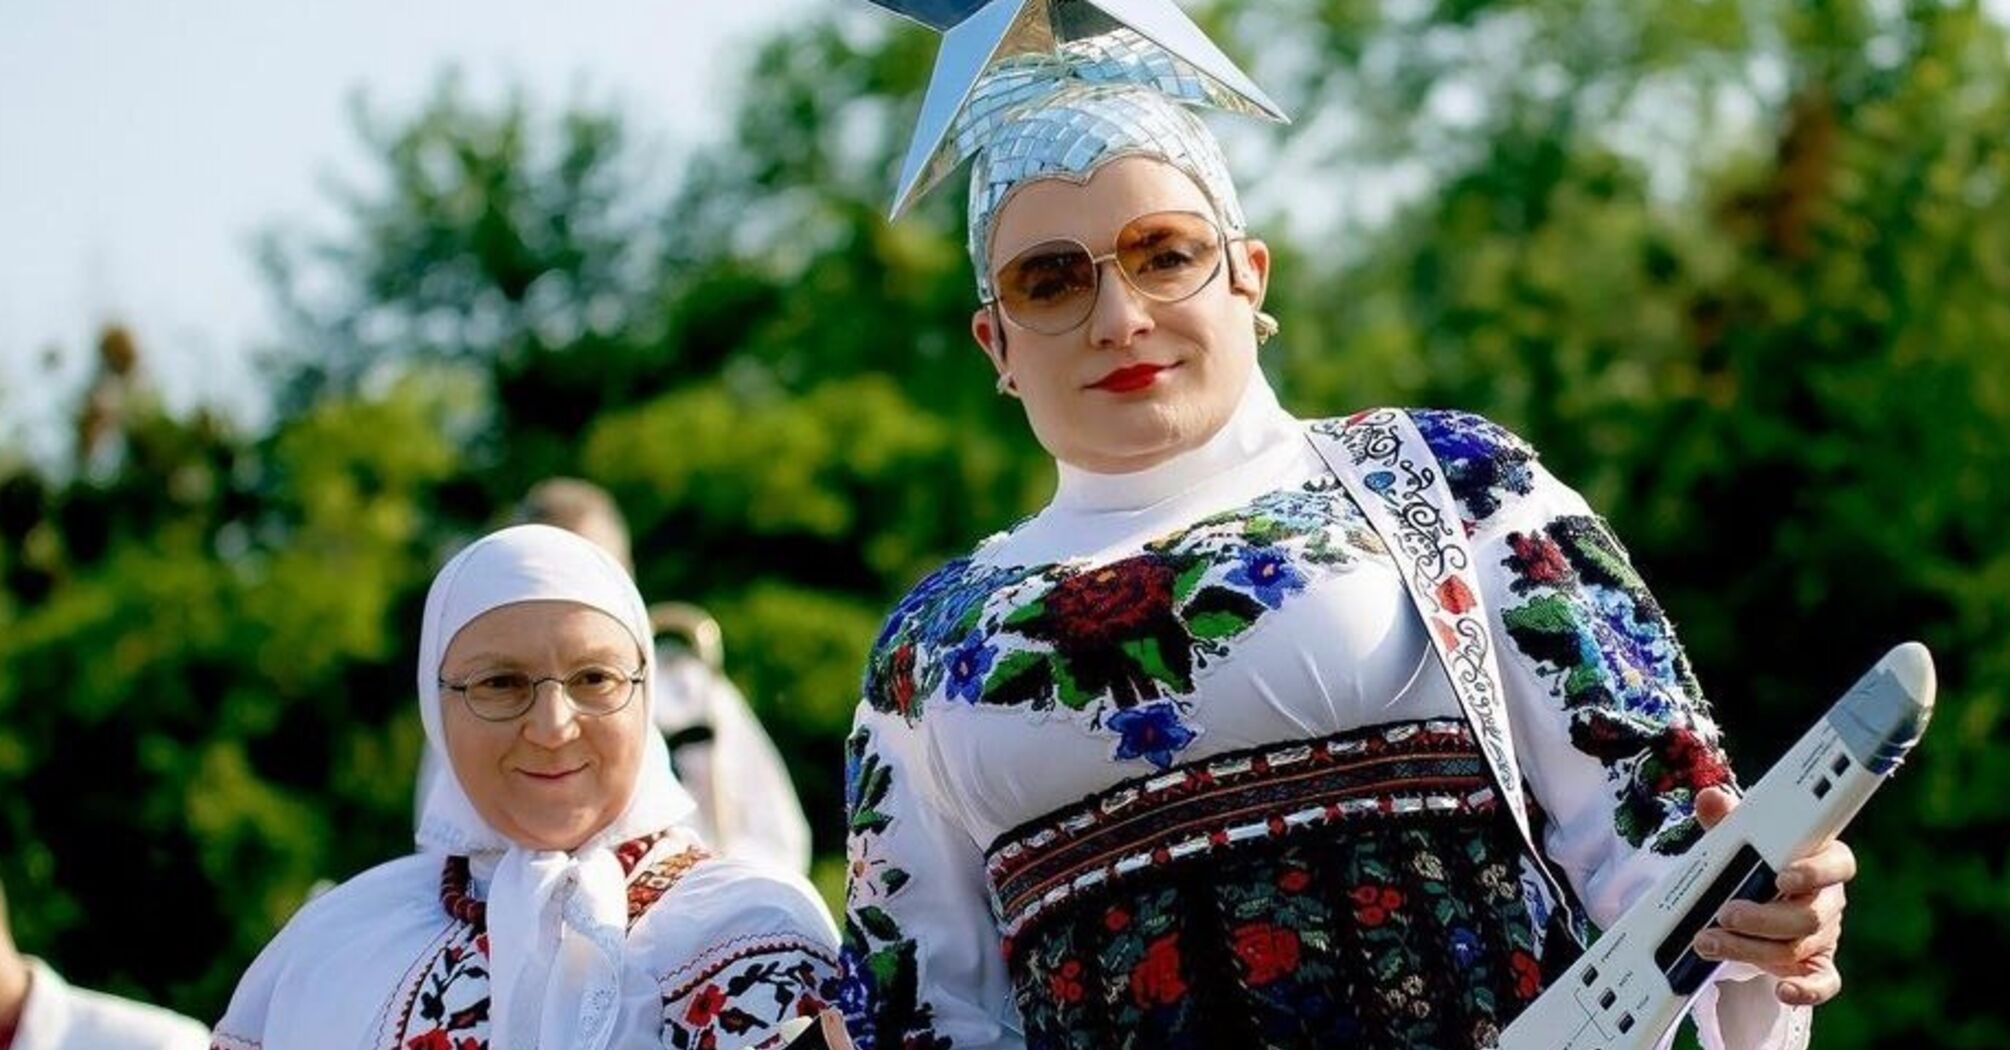 'Почти на месте': Сердючка с 'мамой' в стрингах собрались на Щекавицу (фото)